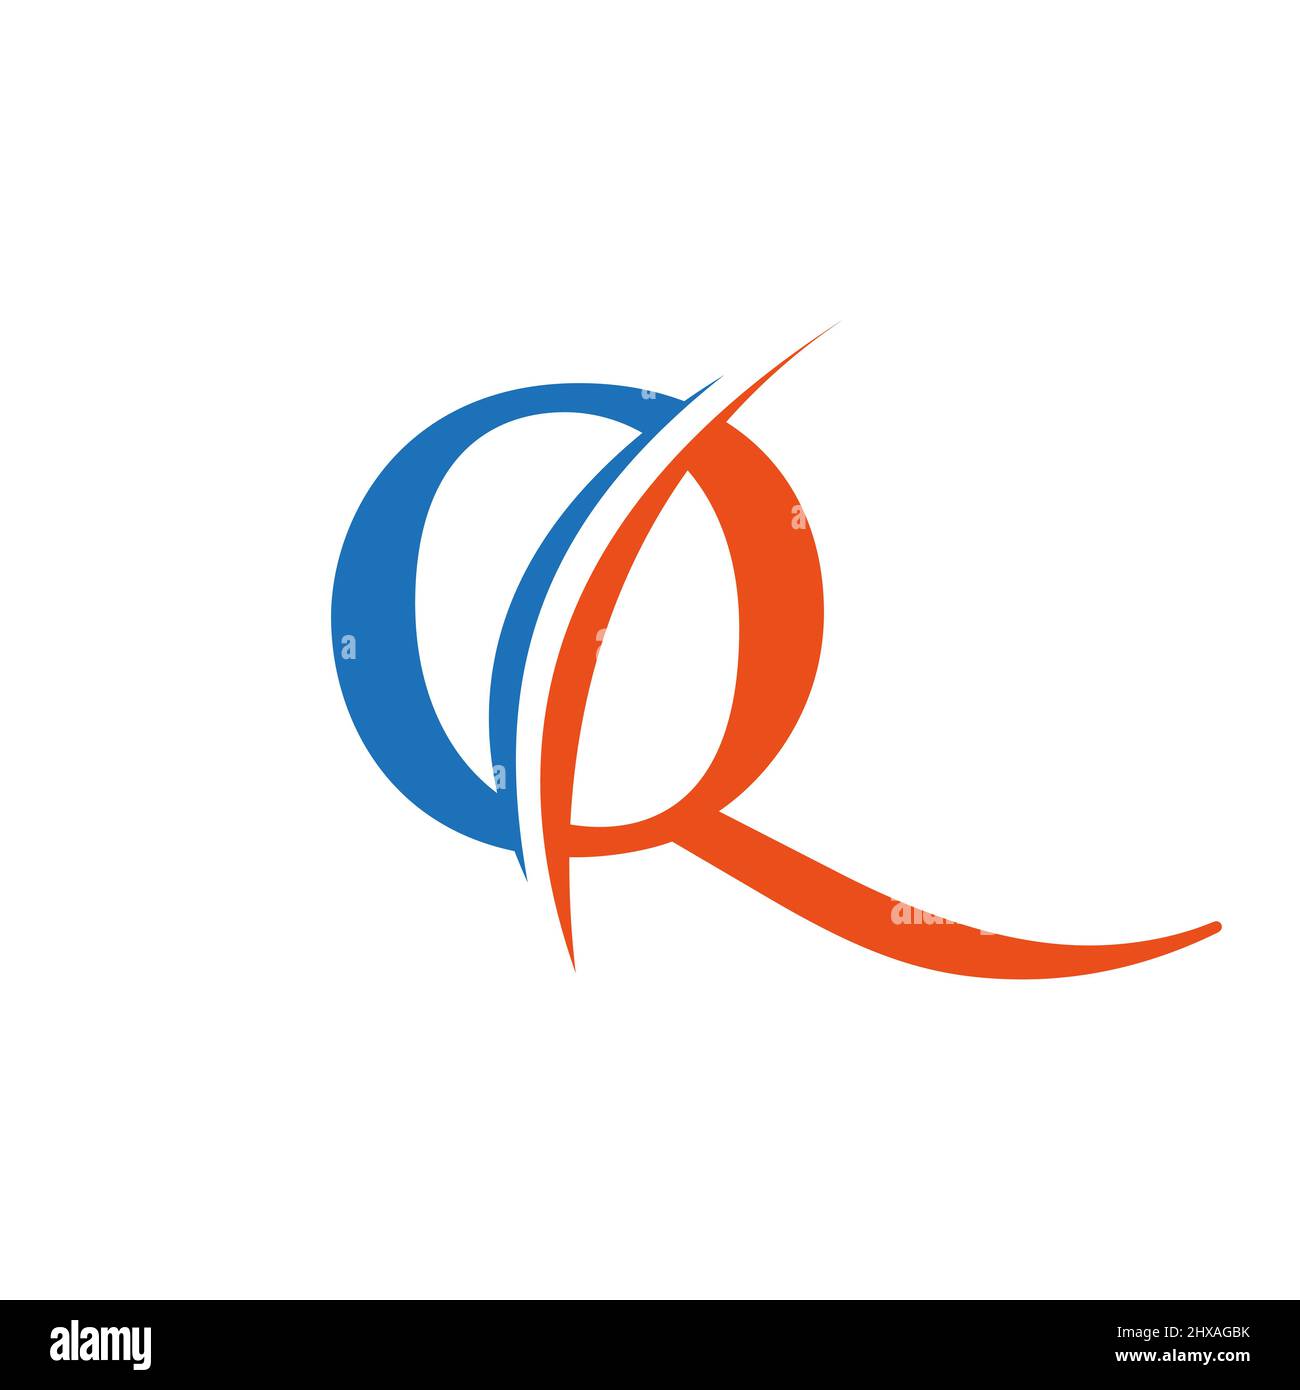 Ursprüngliches Design des Logos des Q-Buchstabens im Vektorformat. Abbildung mit Q-Logo Stock Vektor